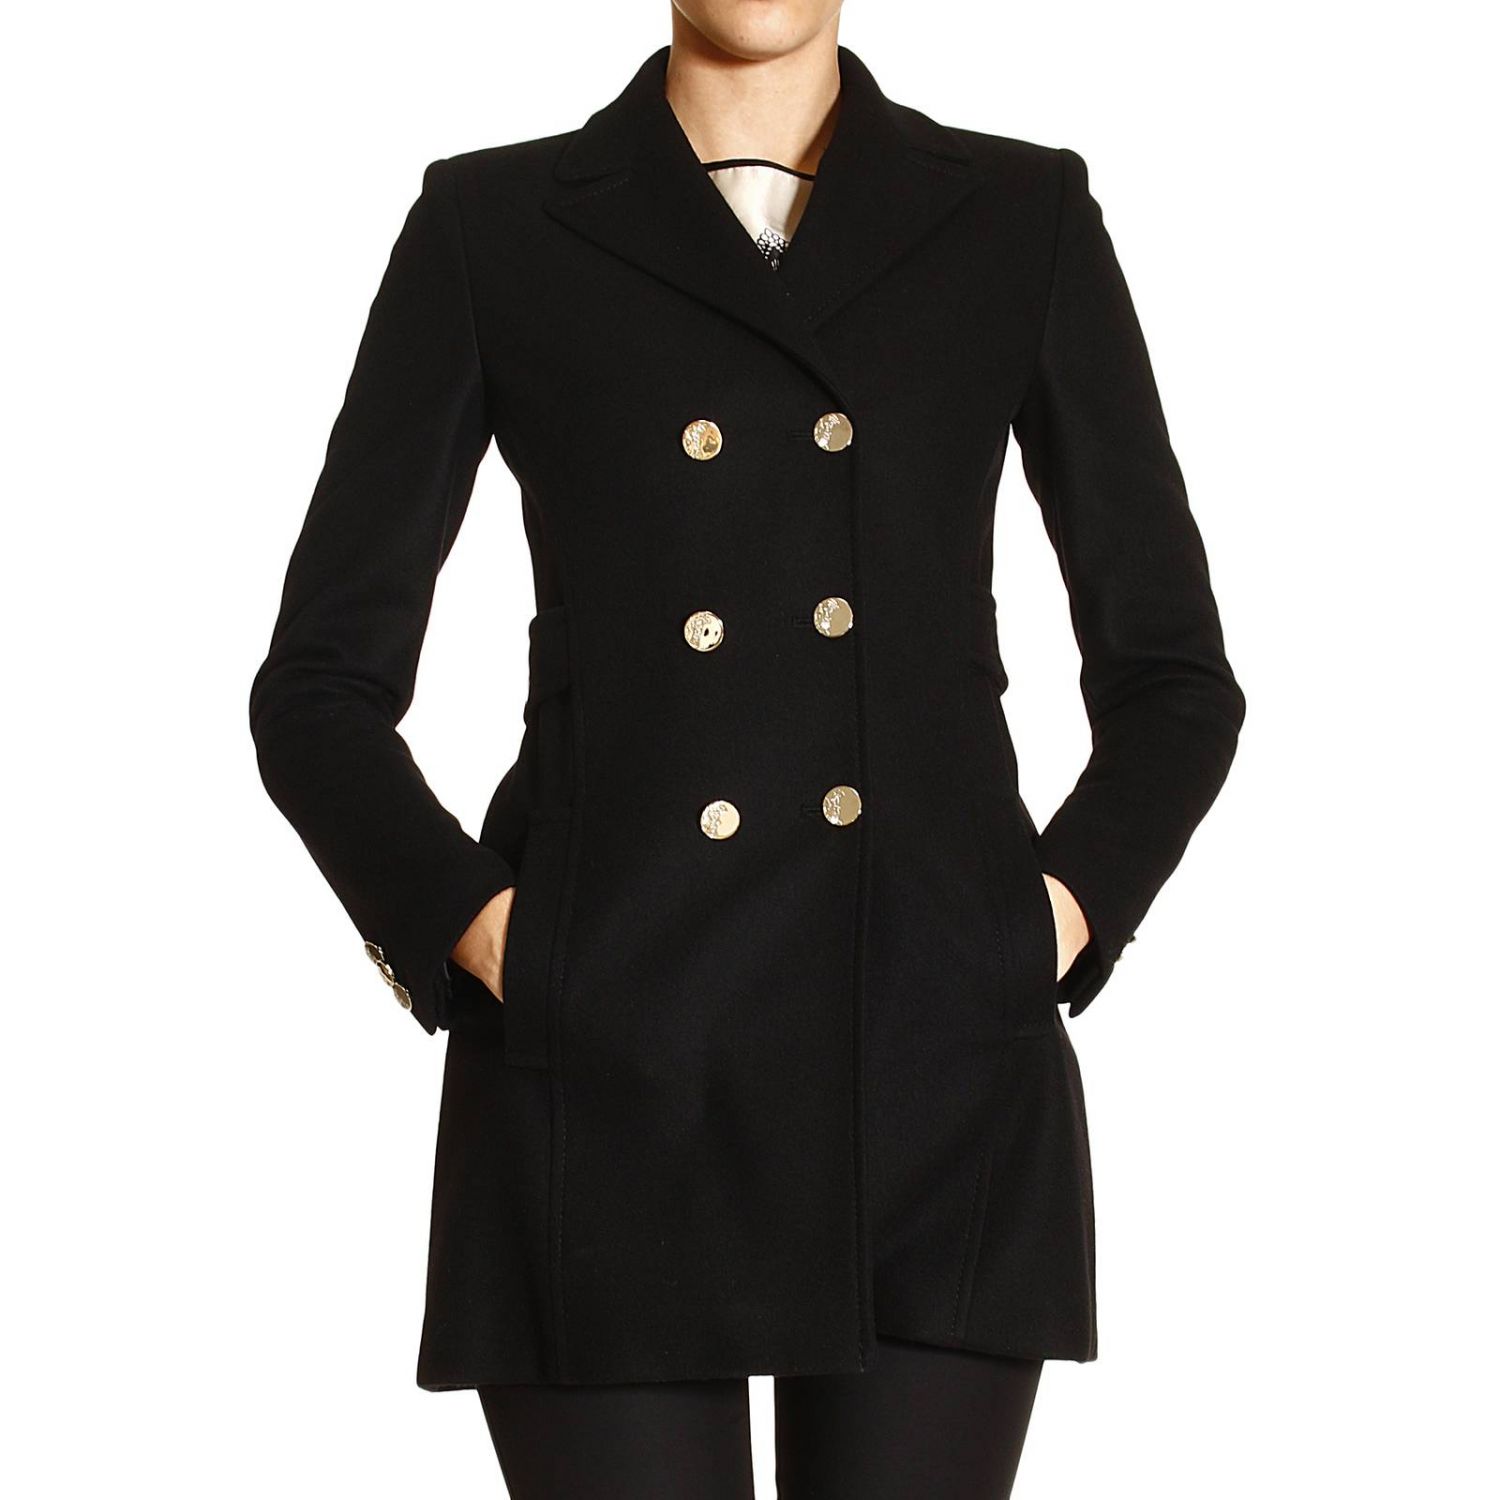 Пальто с погонами. Versace collection пальто. Пальто Версаче. Пальто с погонами женское. Черное пальто с золотыми пуговицами.